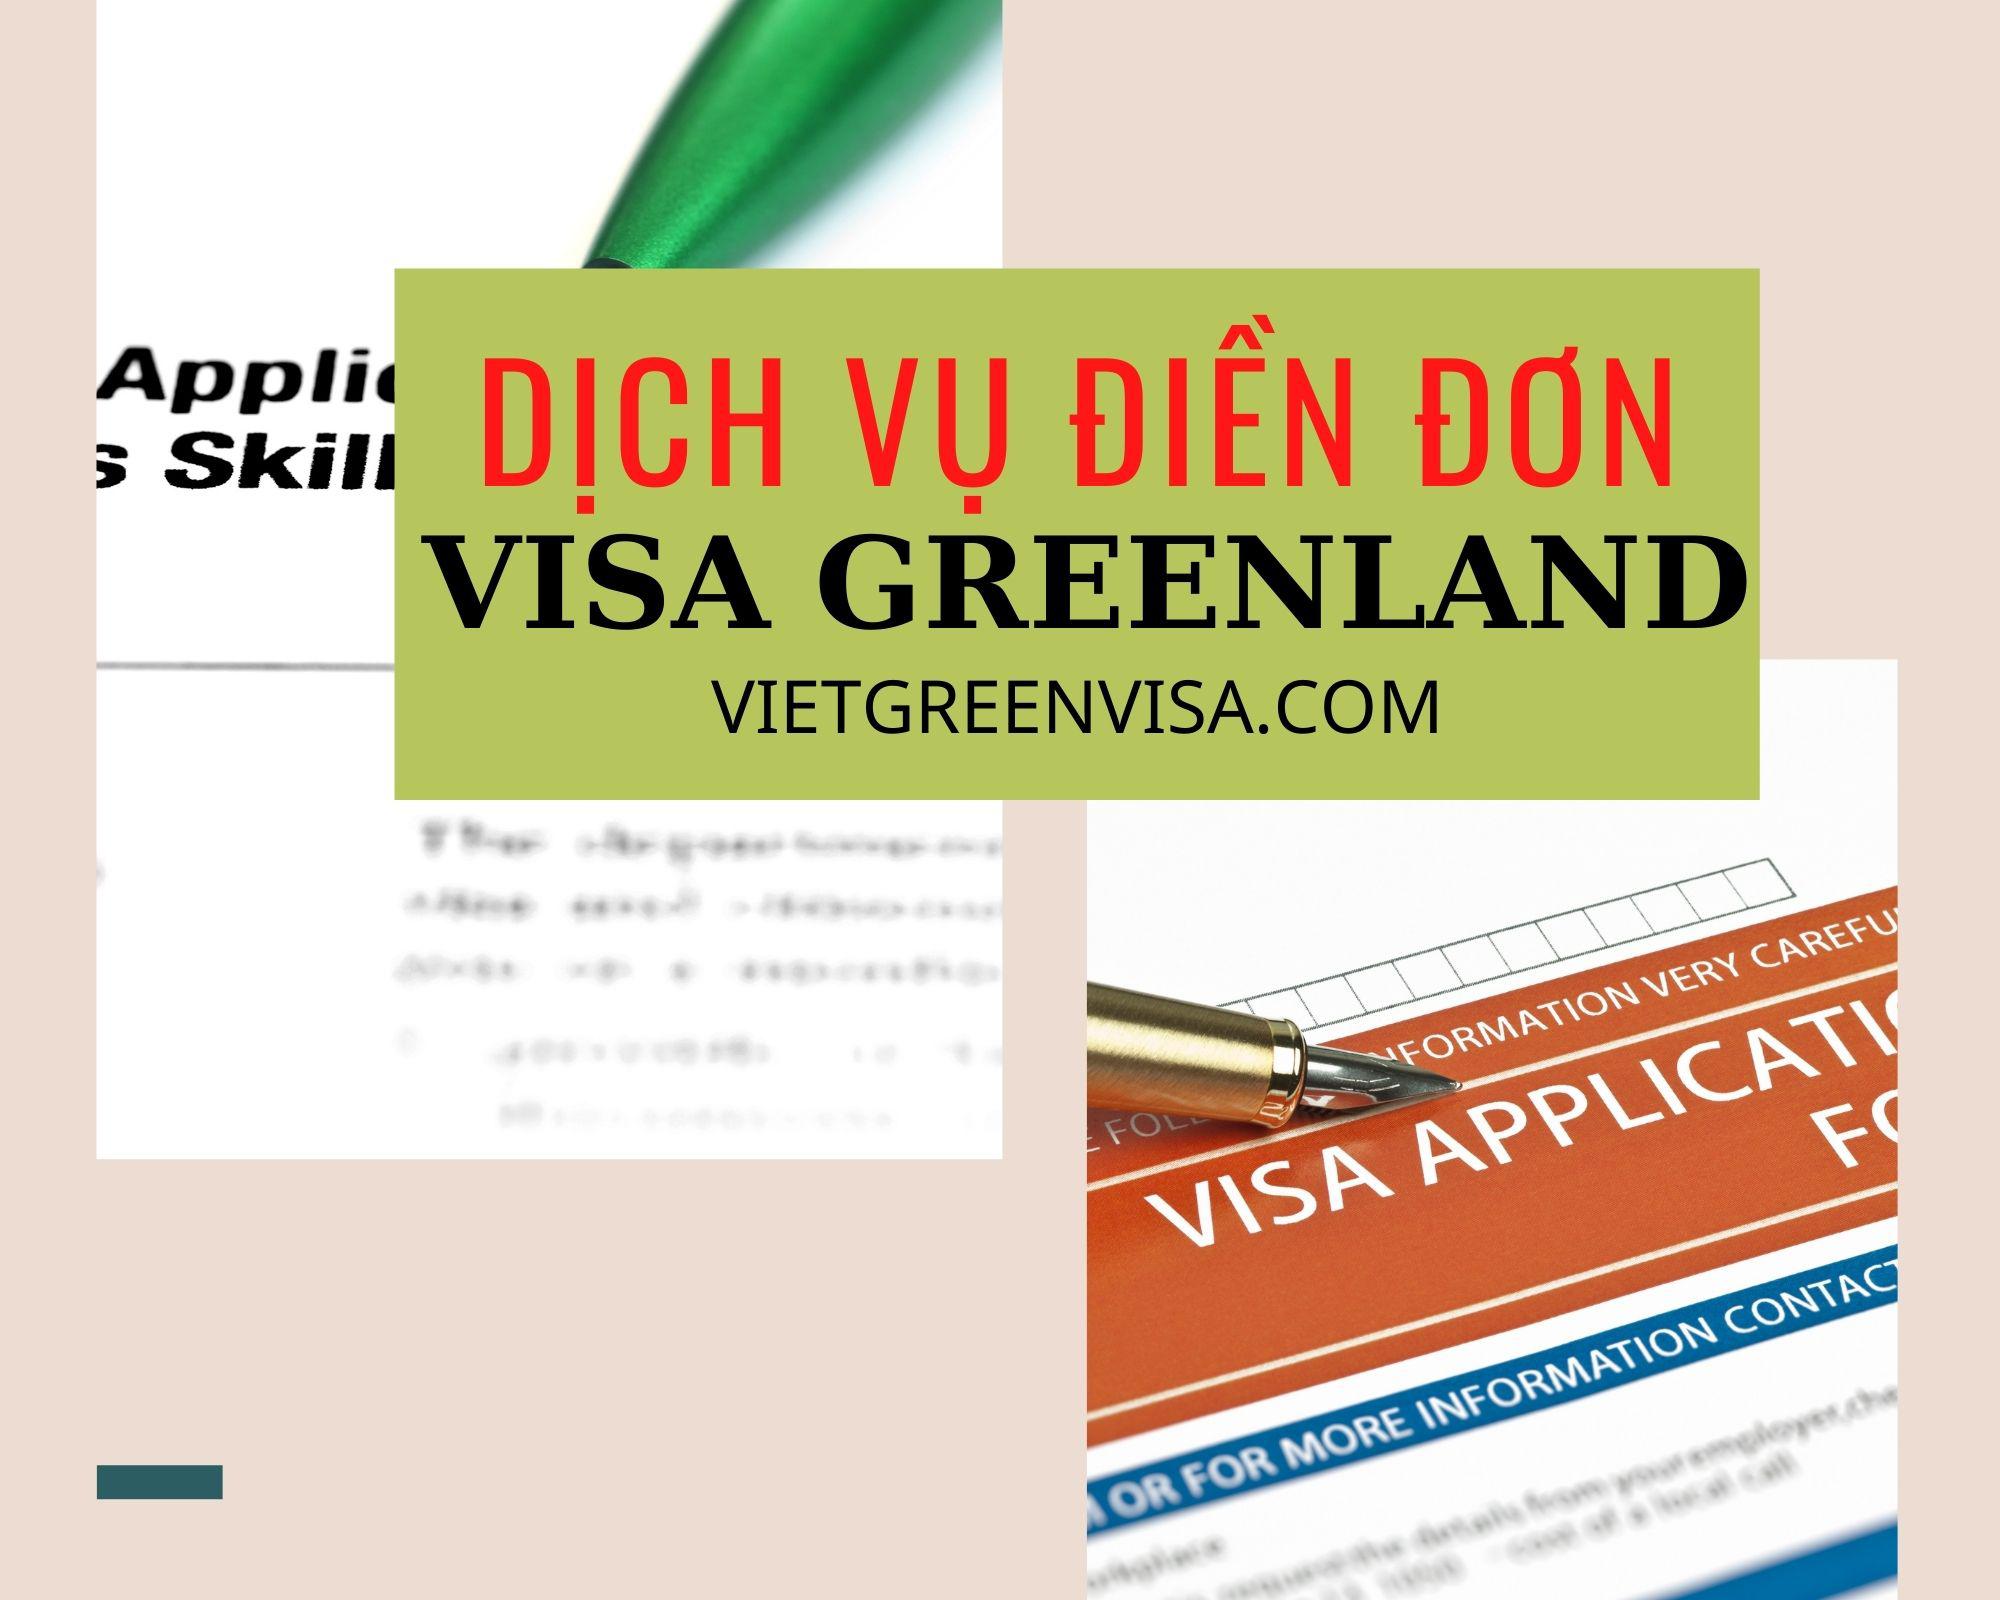 Hỗ trợ điền đơn visa Greenland online nhanh gọn